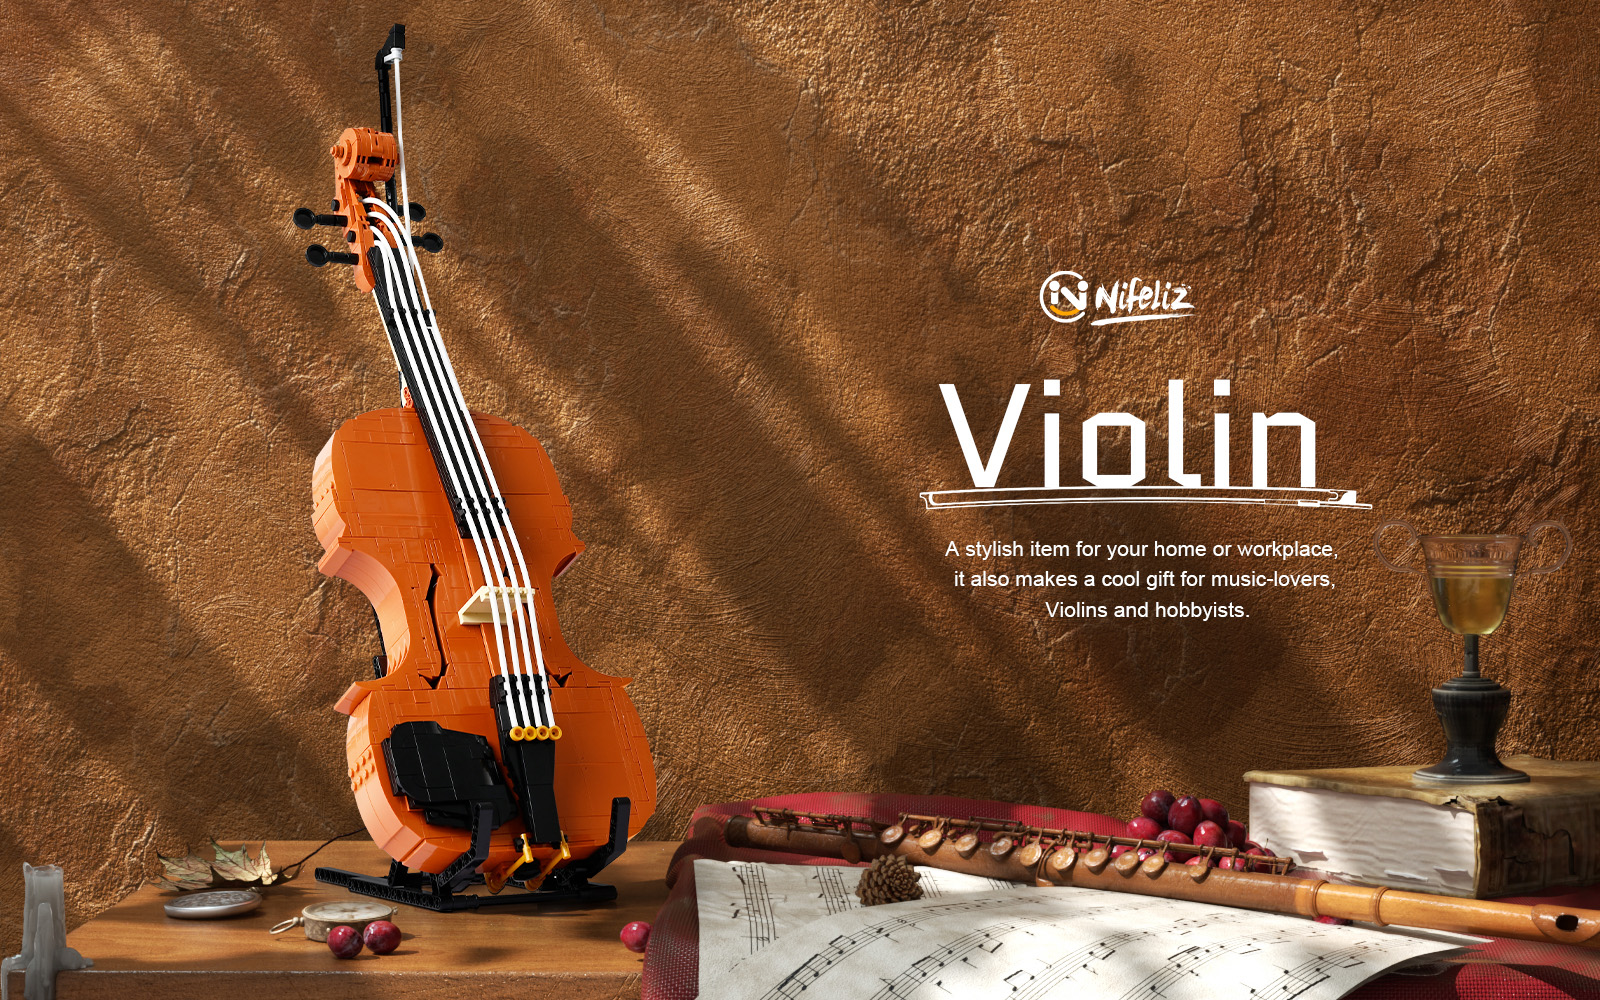 Nifeliz Violin Model